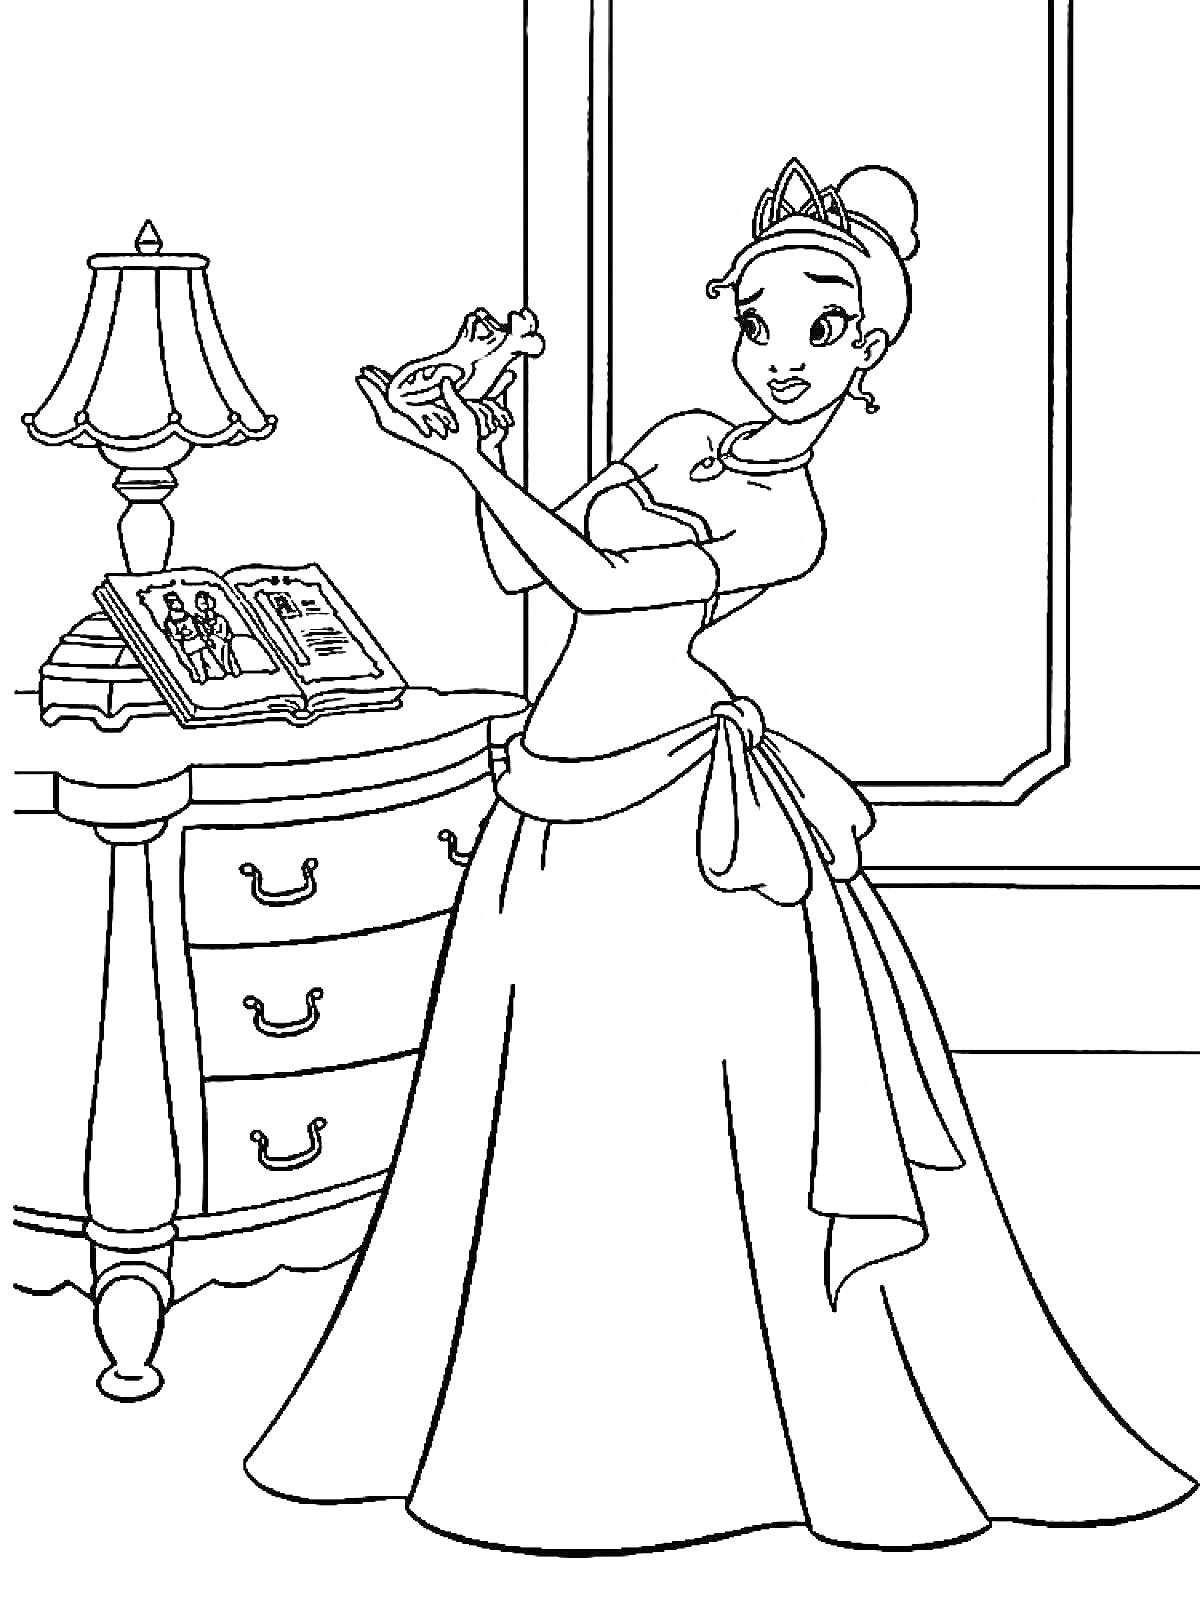 Принцесса с лягушкой, комод с книгами, лампа, окно